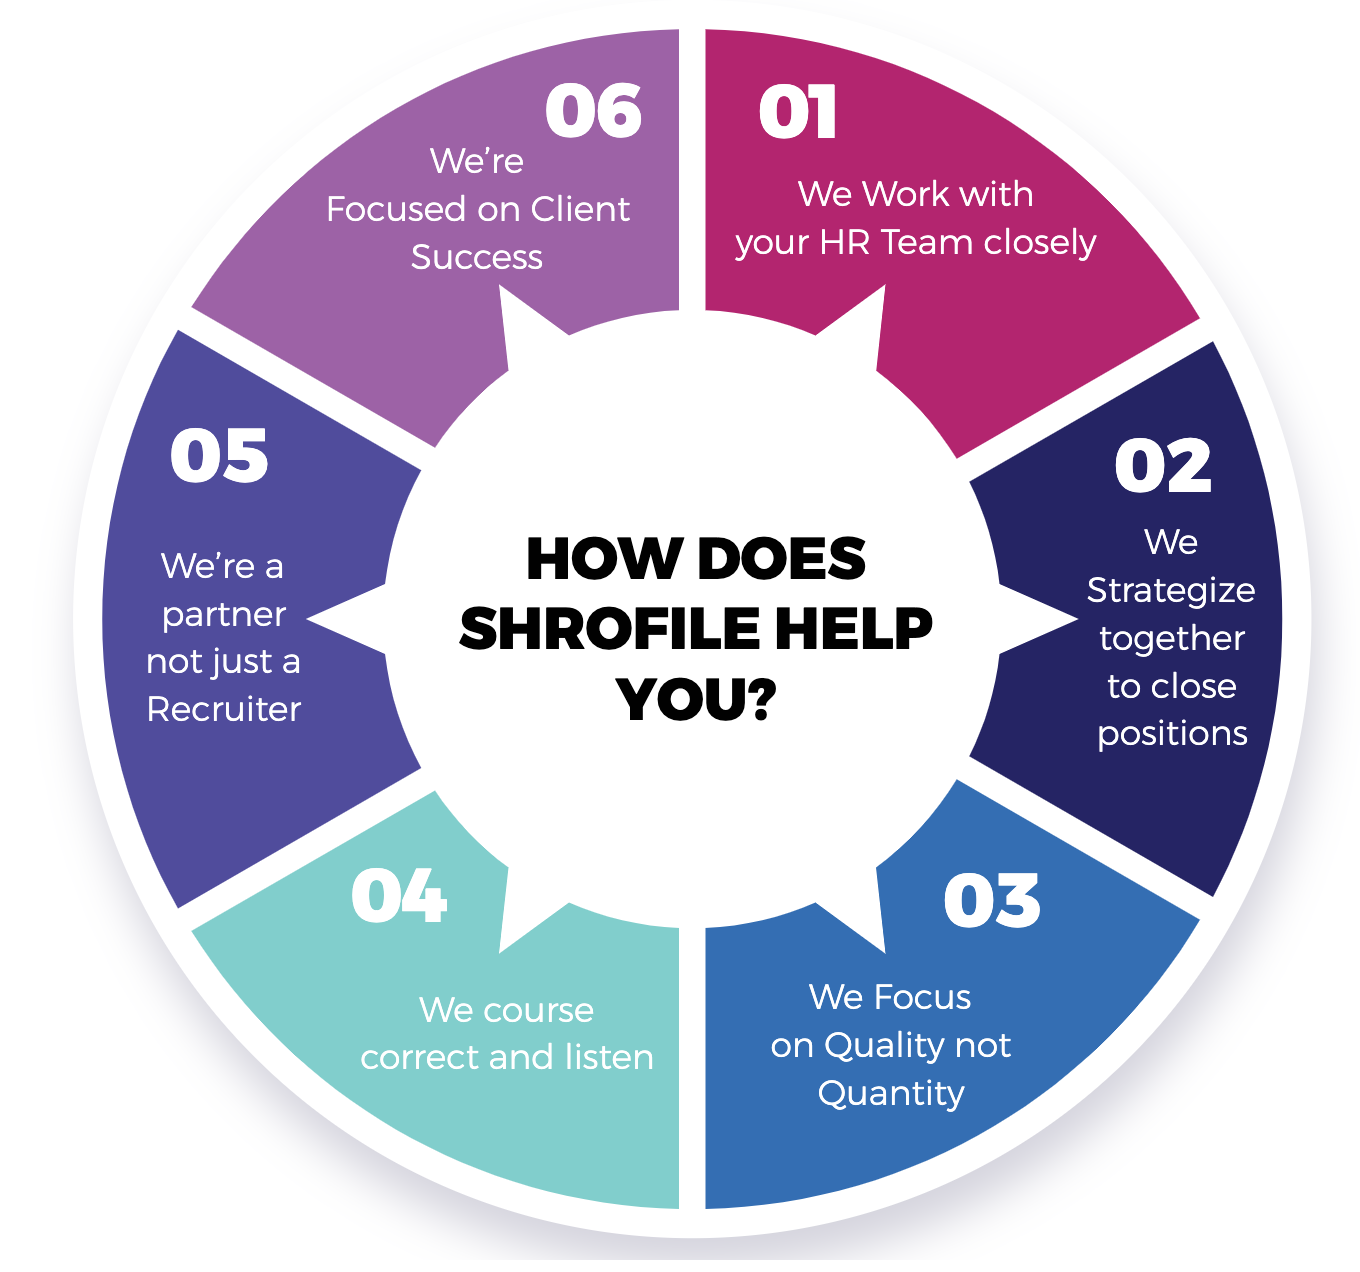 shrofile help you